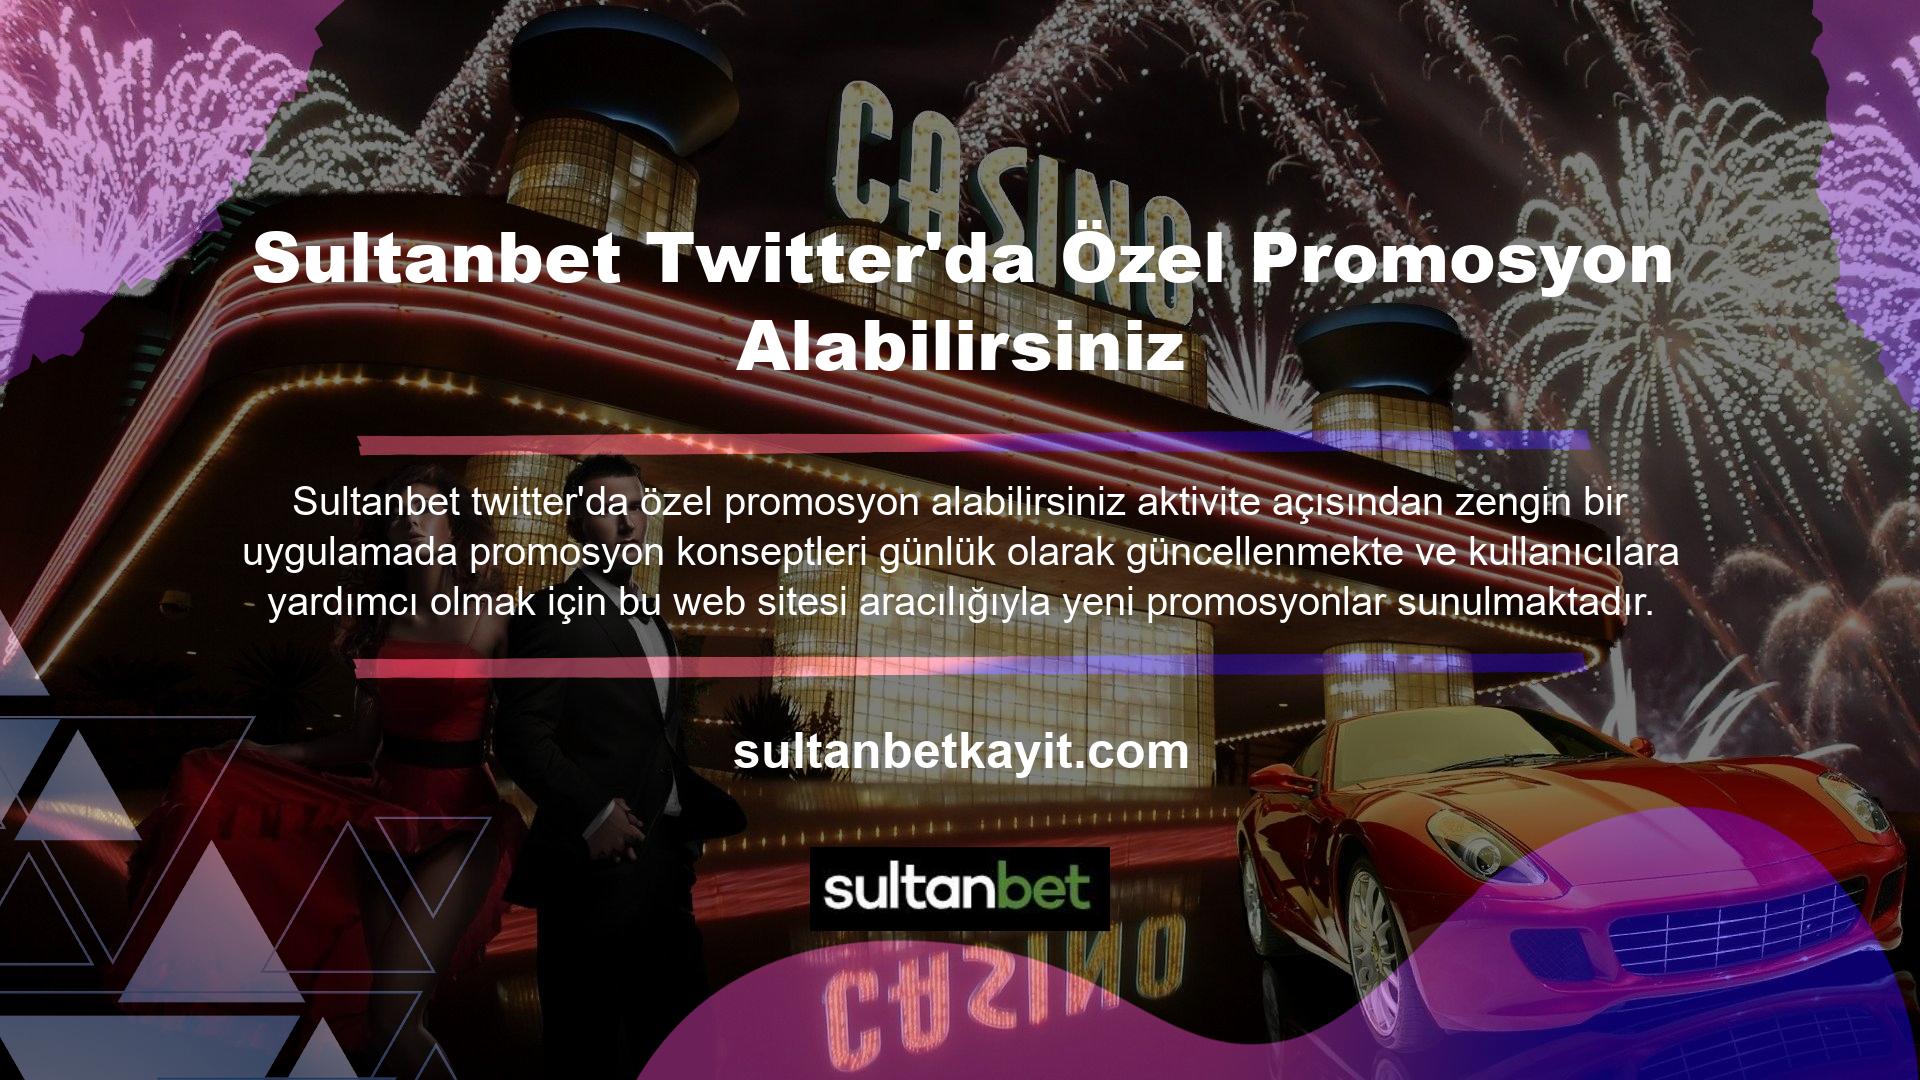 Twitter'da Sultanbet özel teklifler alın